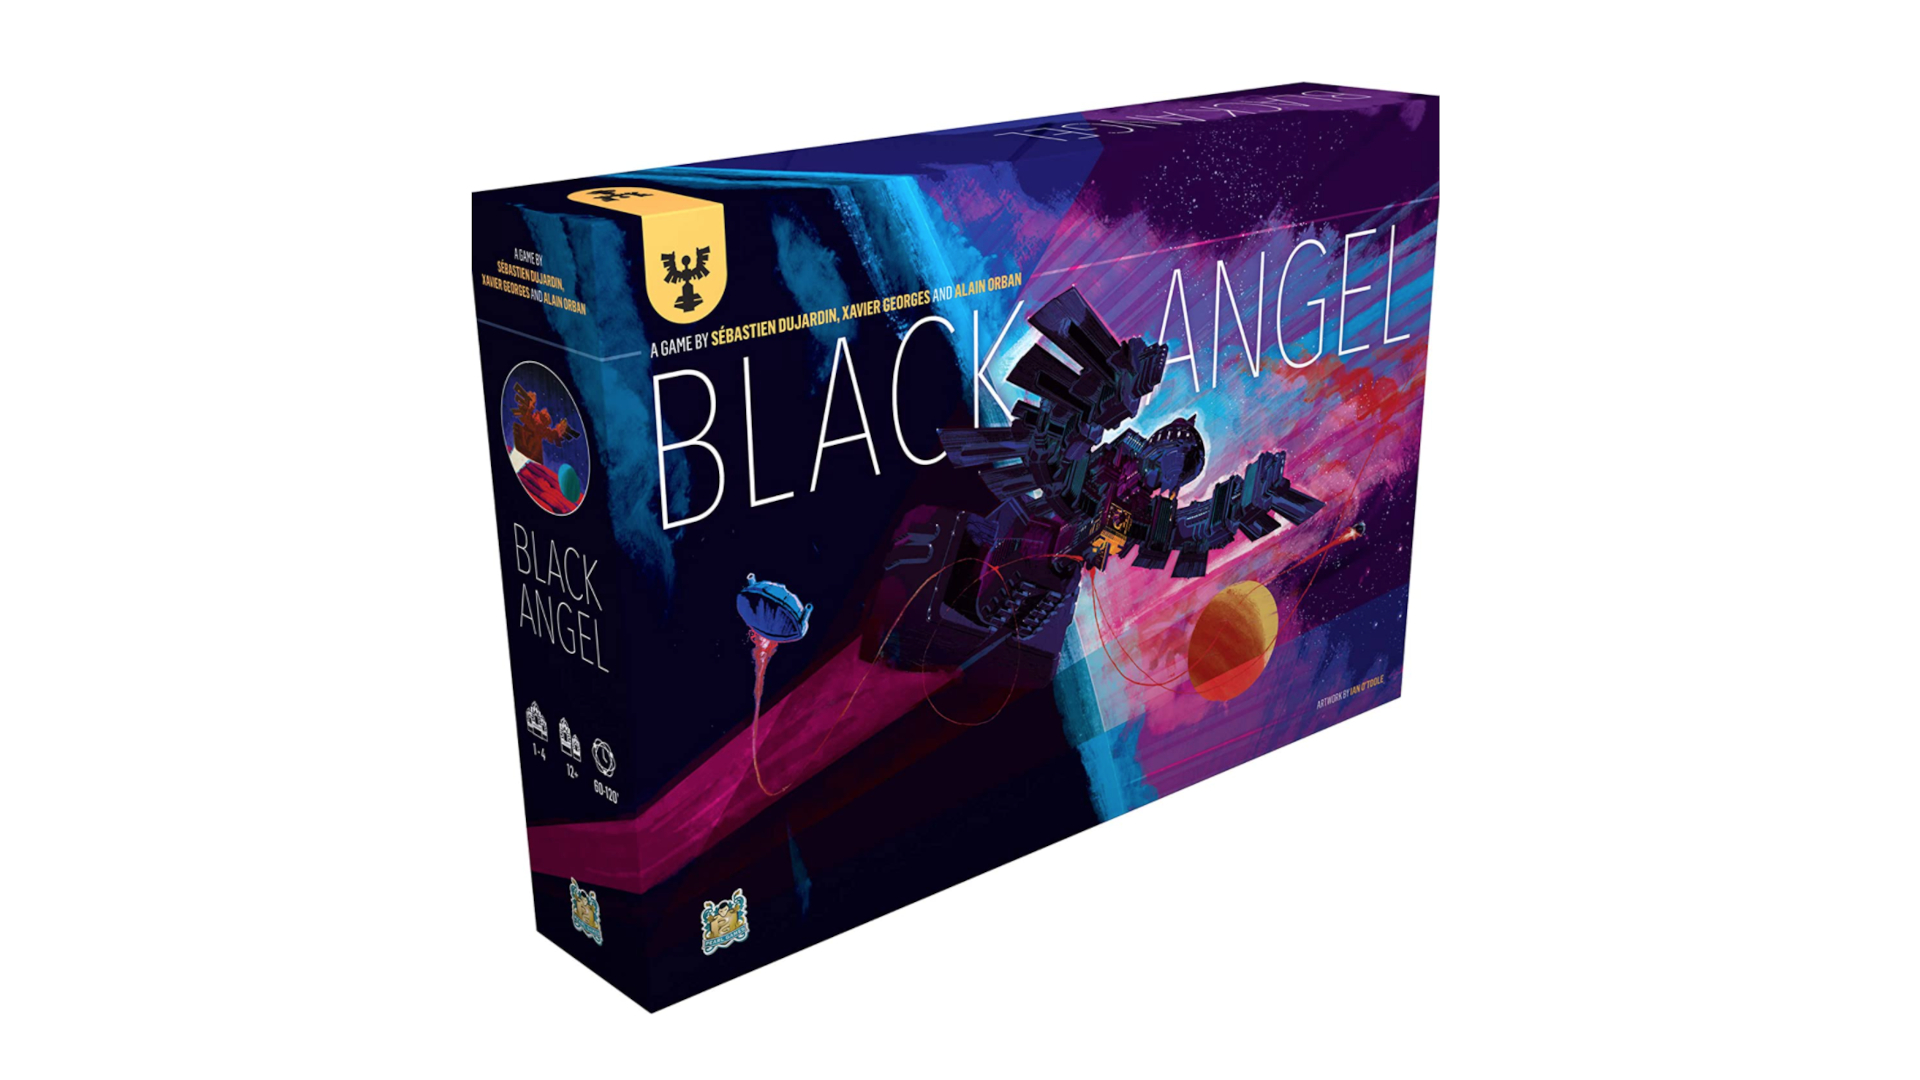 Black Angel (Pearl Games, 2019)